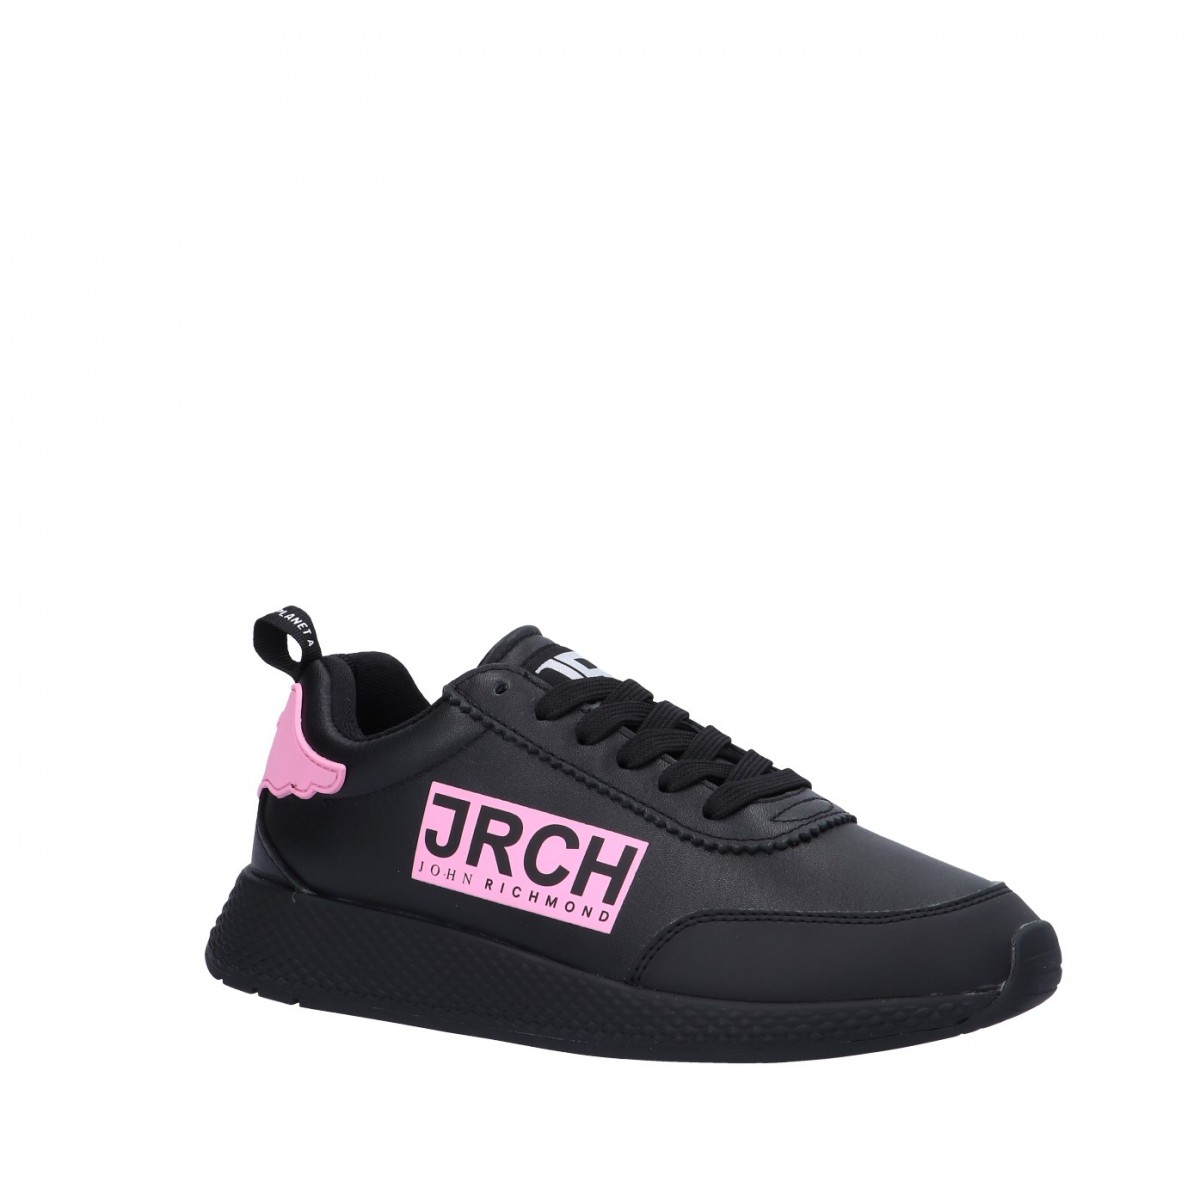 John richmond Sneaker Nero/rosa Gomma 12302/CP